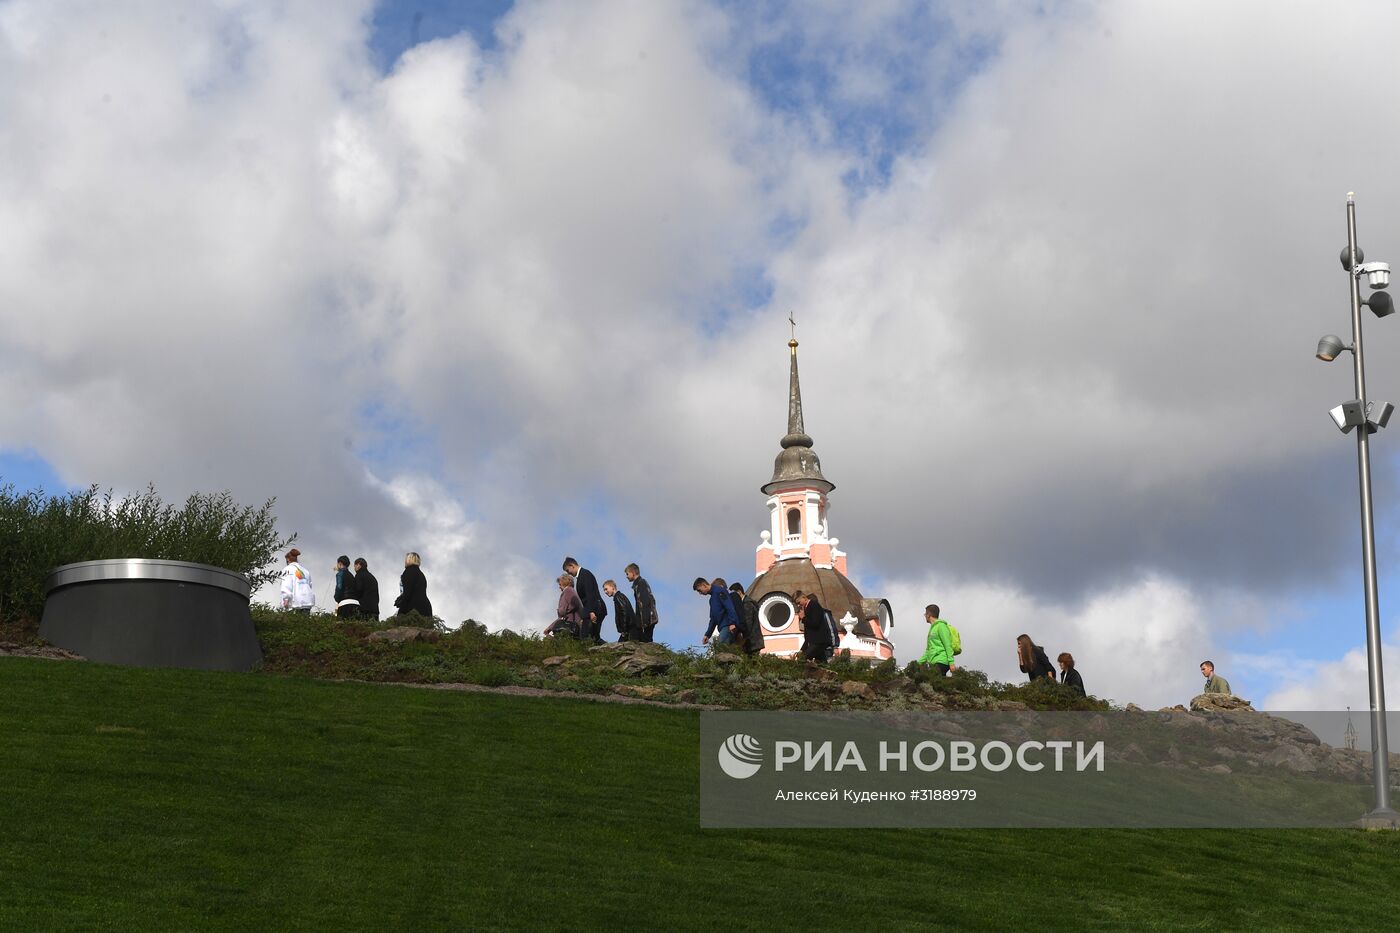 Открытие парка "Зарядье" в Москве